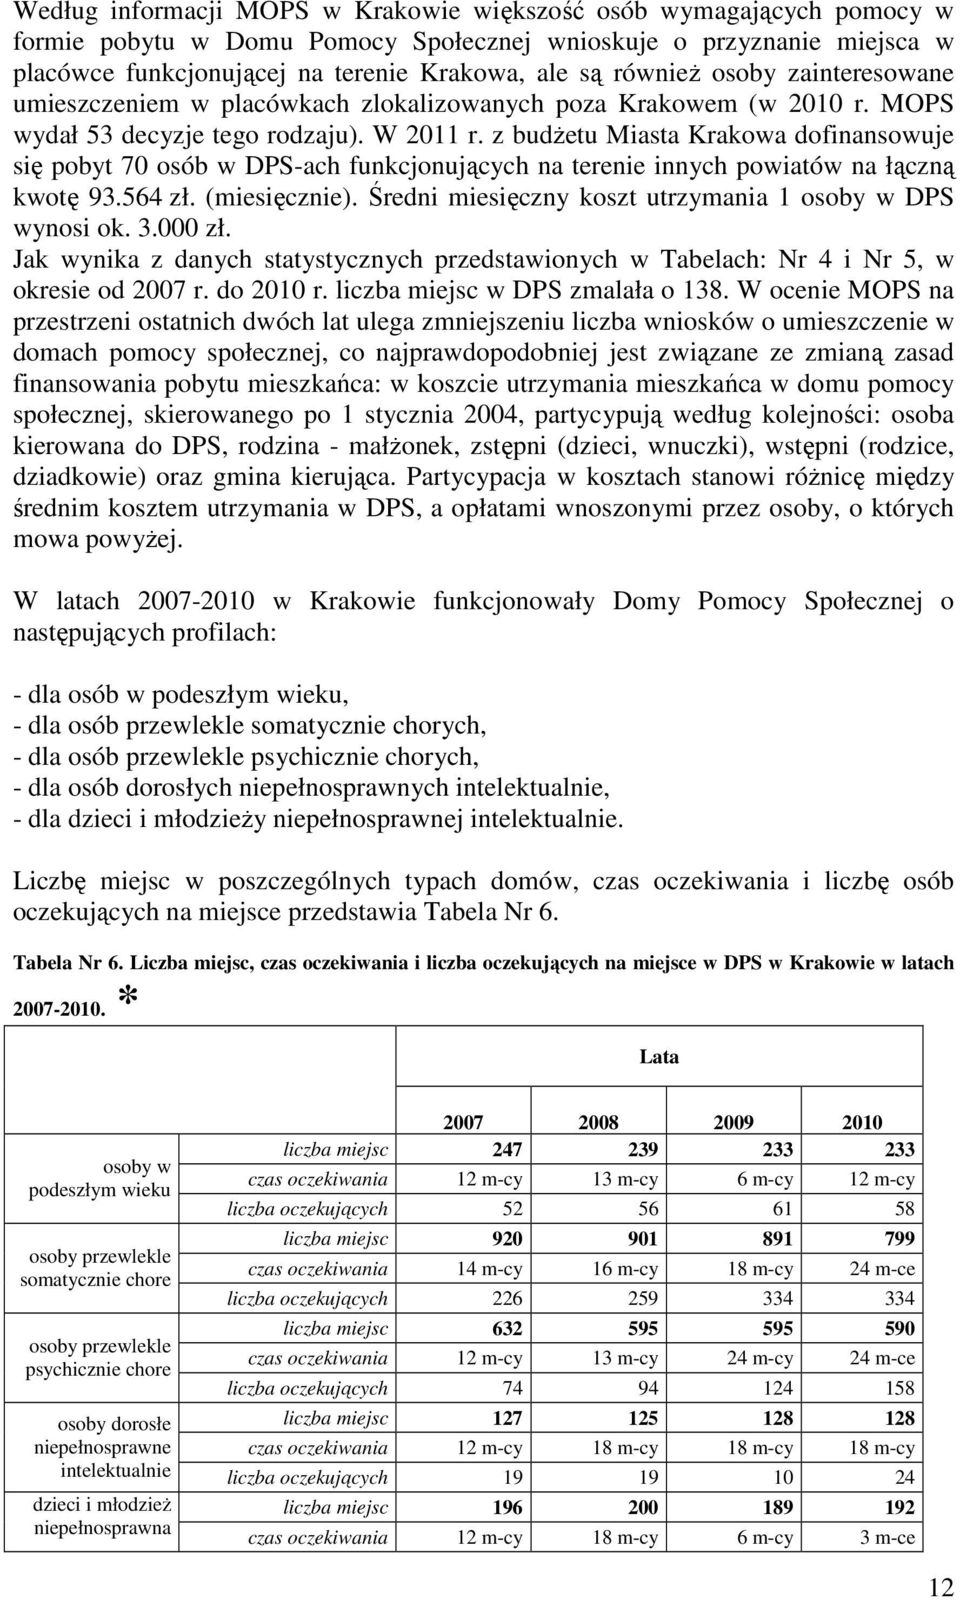 z budŝetu Miasta Krakowa dofinansowuje się pobyt 70 osób w DPS-ach funkcjonujących na terenie innych powiatów na łączną kwotę 93.564 zł. (miesięcznie).